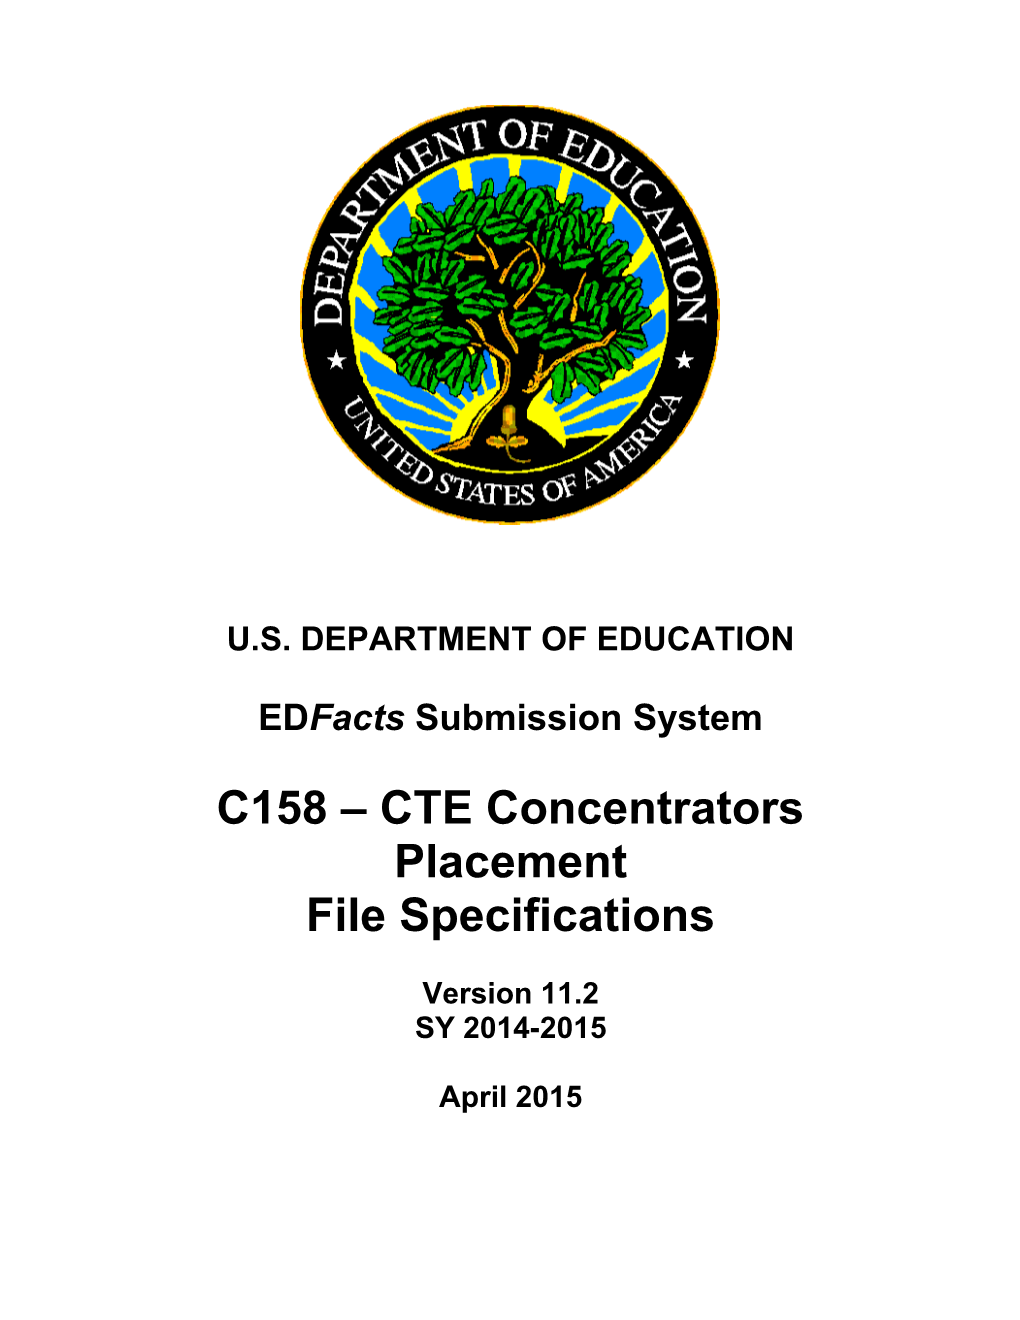 CTE Concentrators Placement File Specification